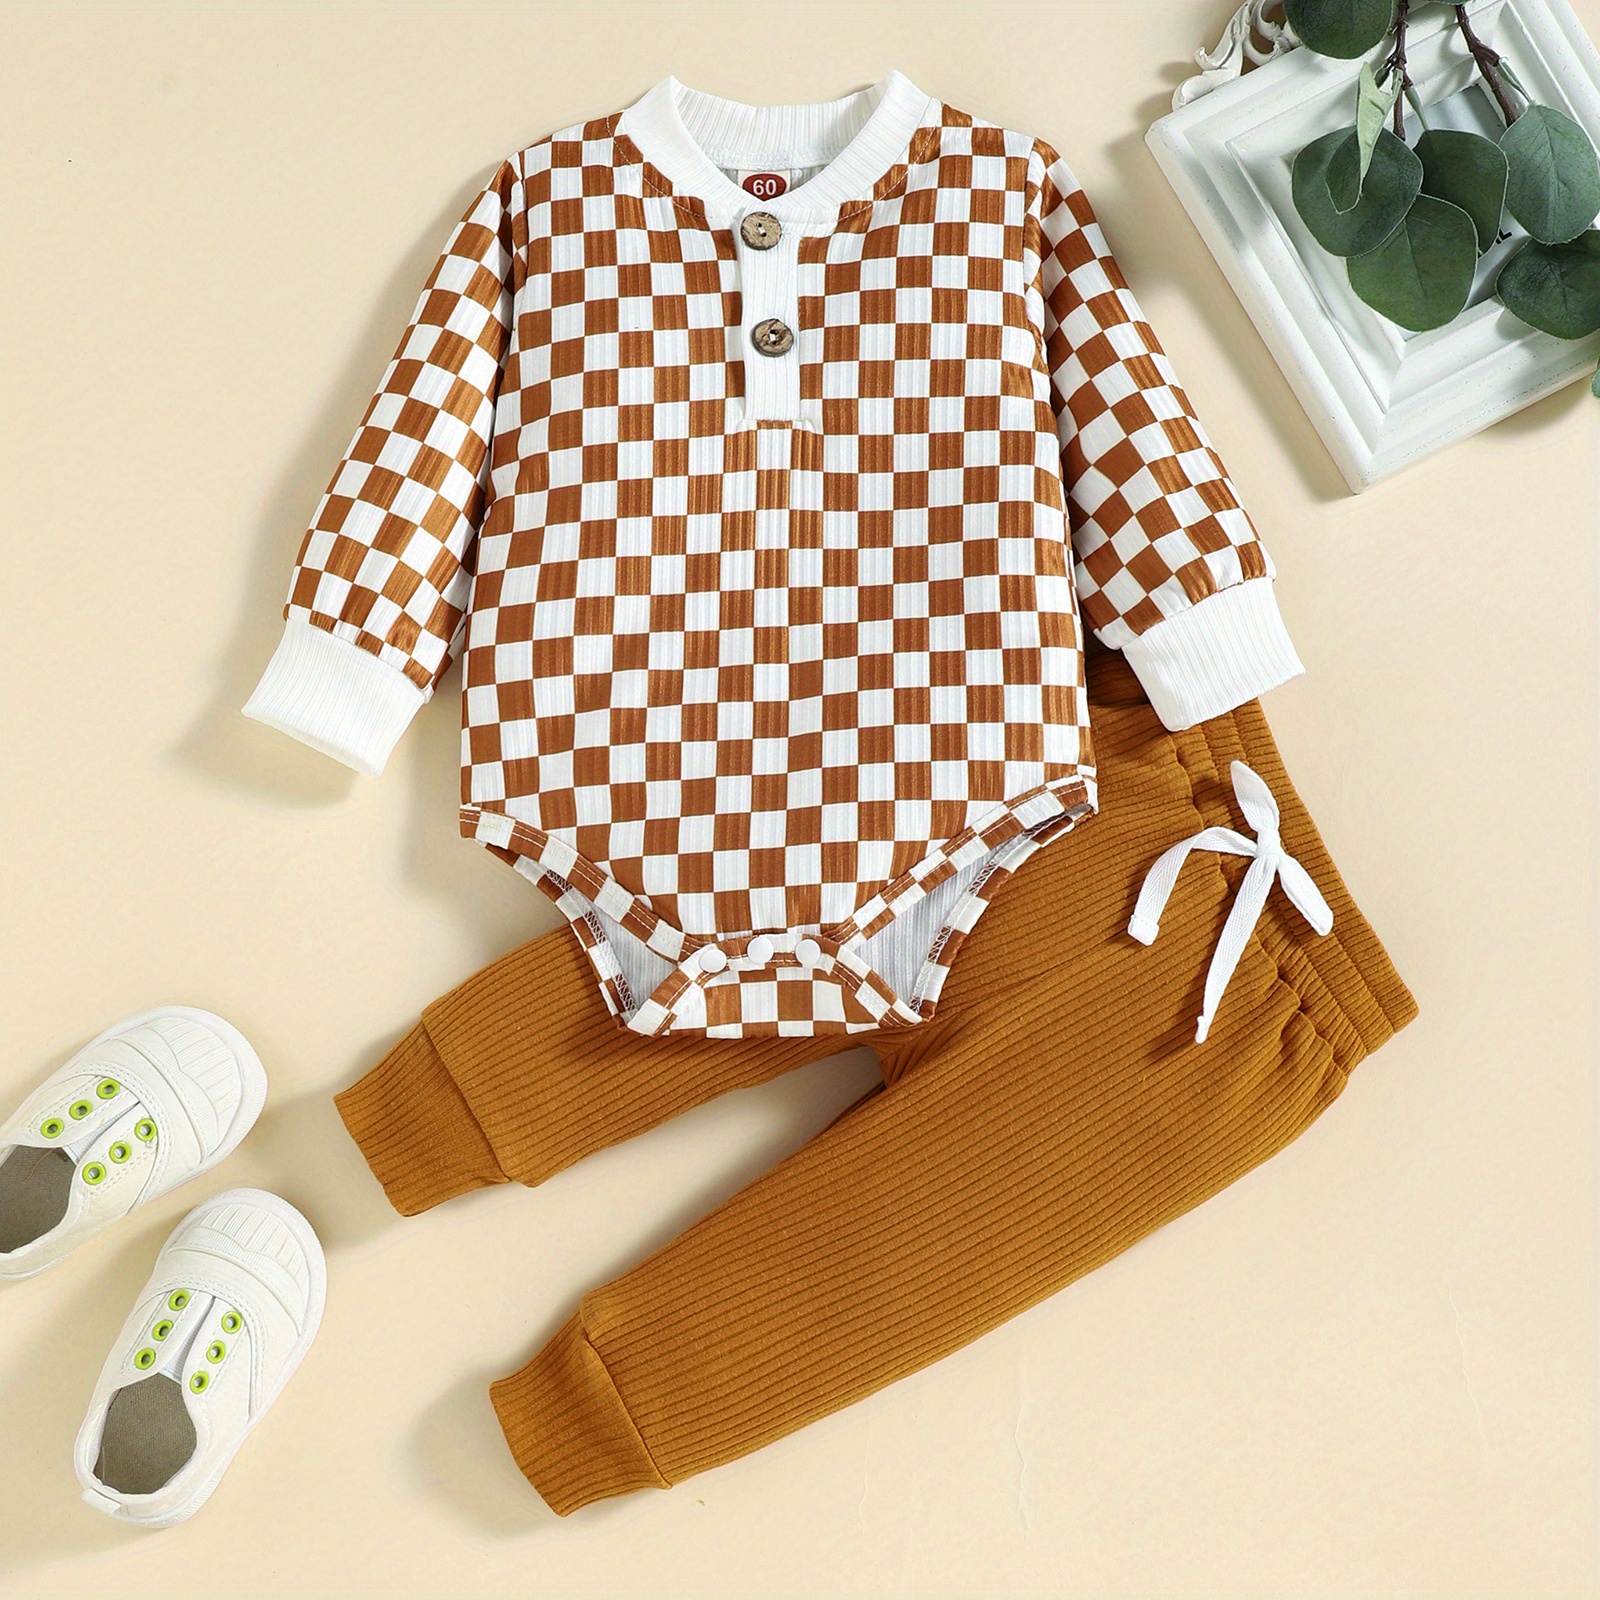 Louis Vuitton Baby Boy Clothes